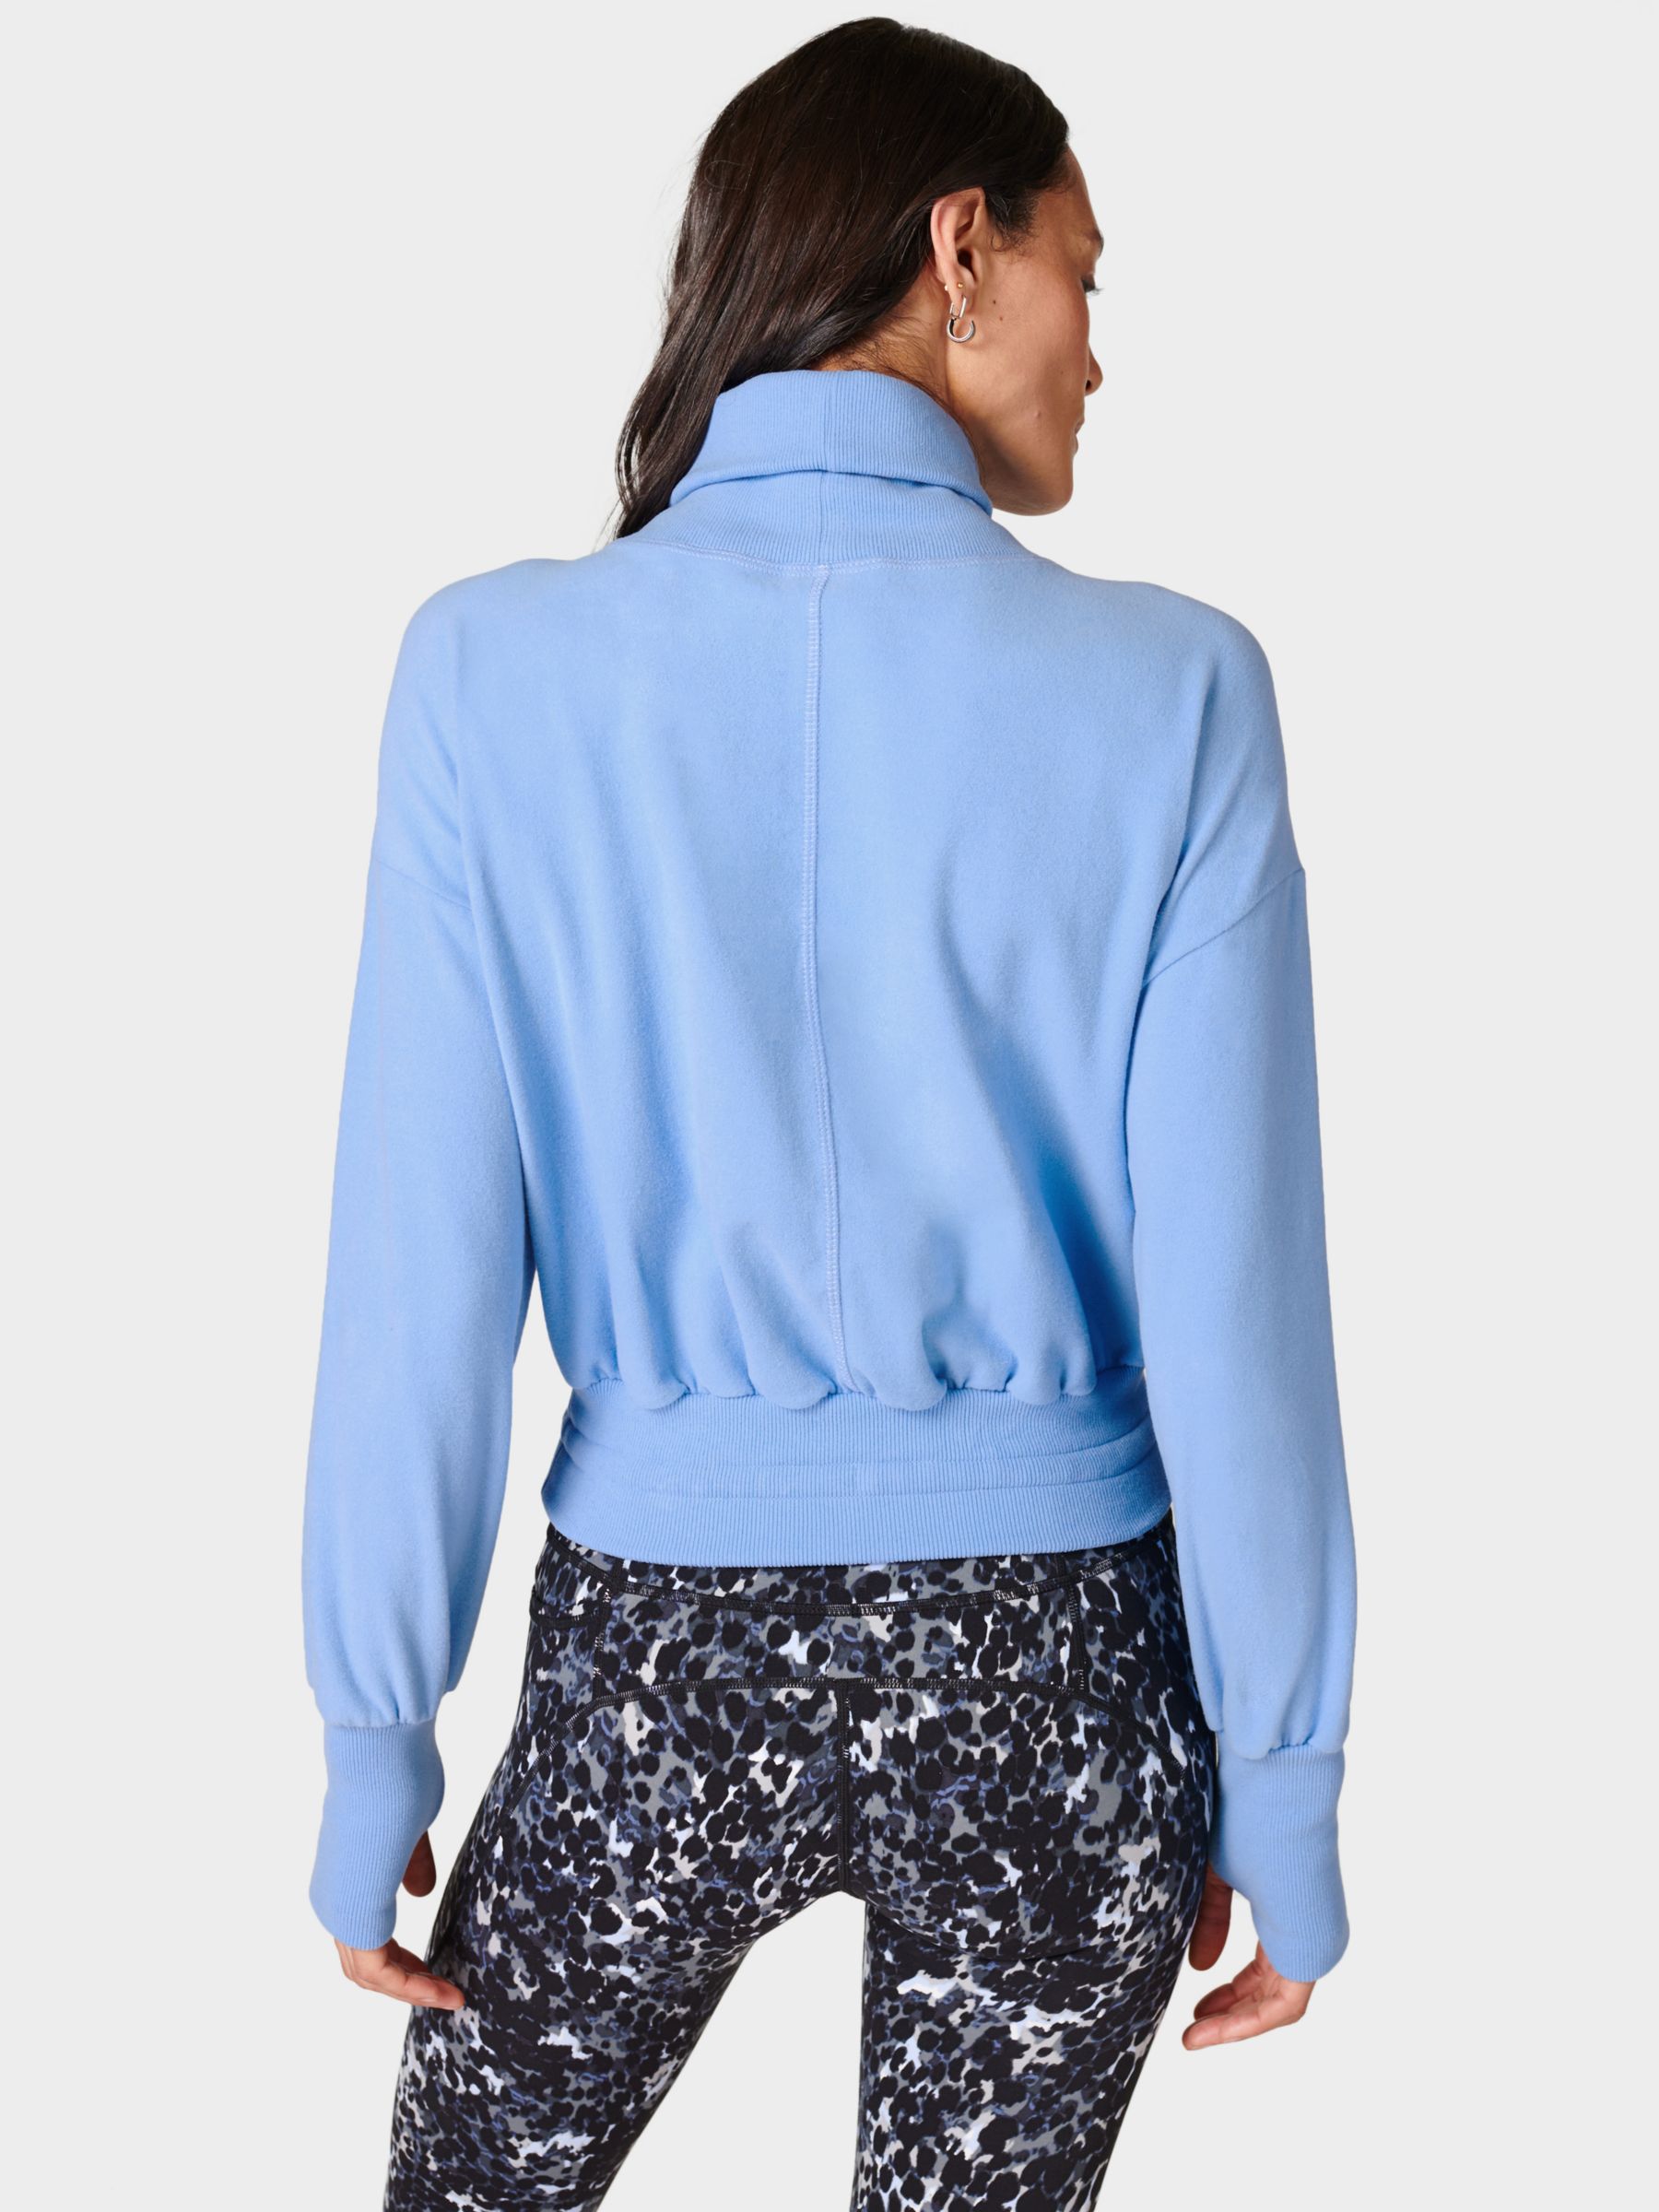 Sweaty Betty Melody Luxe Fleece Sweatshirt, Filter Blue, XS